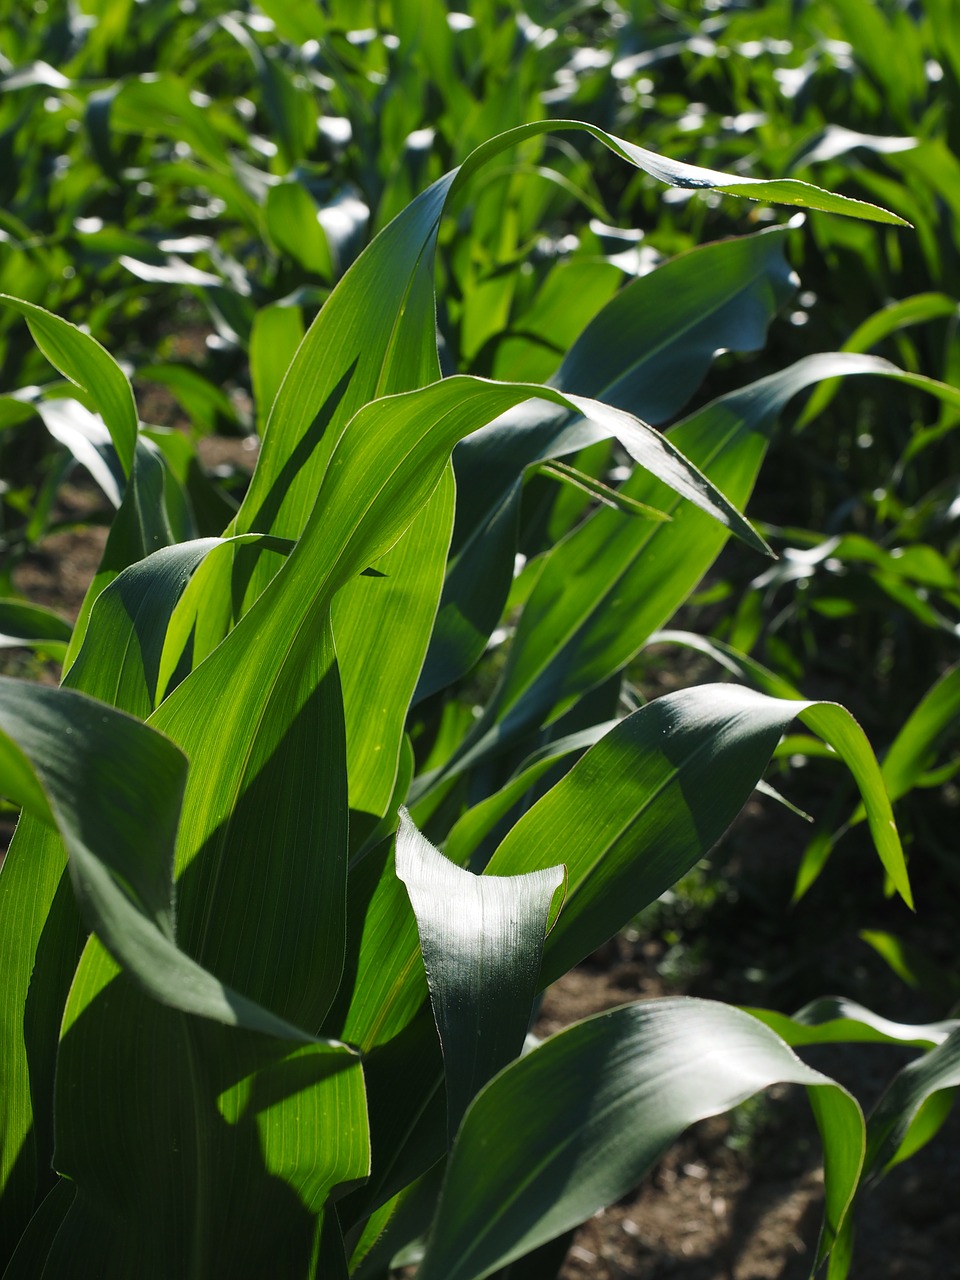 Kukurūzų Laukas, Kukurūzų Auginimas, Žemdirbystė, Kukurūzų Lapai, Kukurūzai, Žalias, Laukas, Pašariniai Kukurūzai, Grūdai, Maistas